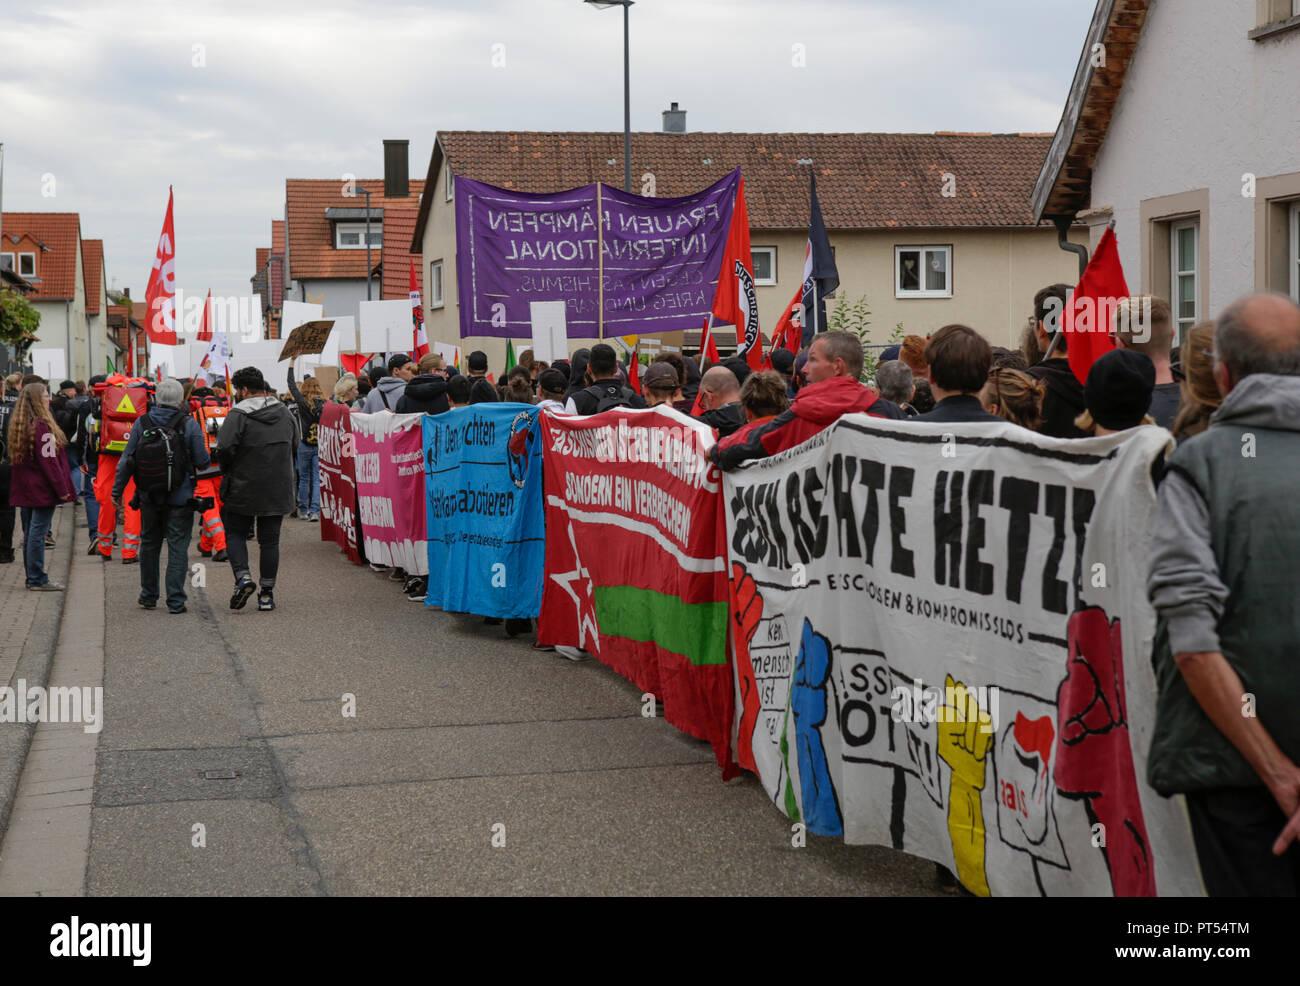 Germania Kandel -- 6 Ottobre 2018 -- l'anti-fascisti manifestanti marzo con banner e poster attraverso Kandel. Circa 300 persone da destra-wing le organizzazioni hanno protestato per la 14. volta nella città di Kandel nel Palatinato contro i rifugiati e gli stranieri e il governo tedesco. Hanno chiamato per una maggiore sicurezza dei tedeschi e le donne dal preteso incremento della violenza dai rifugiati. Il luogo della protesta è stato scelto a causa del 2017 Kandel accoltellato l'attacco, in cui un 15 anno vecchia ragazza è stata uccisa da un richiedente asilo. Essi sono stati confrontati da circa 400 anti-fascista contro i dimostranti da diversi Foto Stock